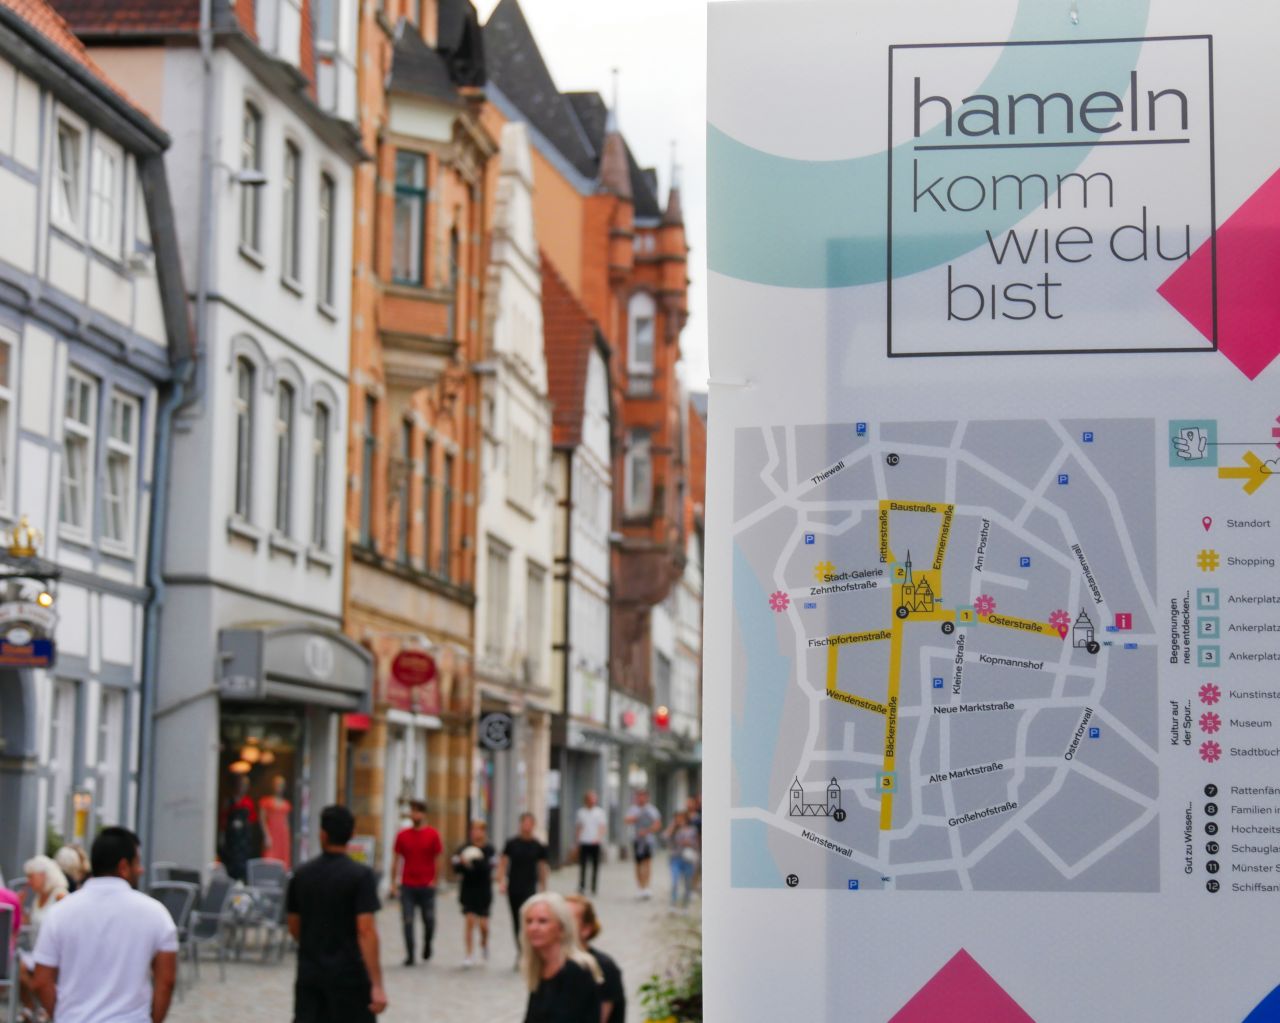 Citytrip Hamelen Duitsland Hameln26